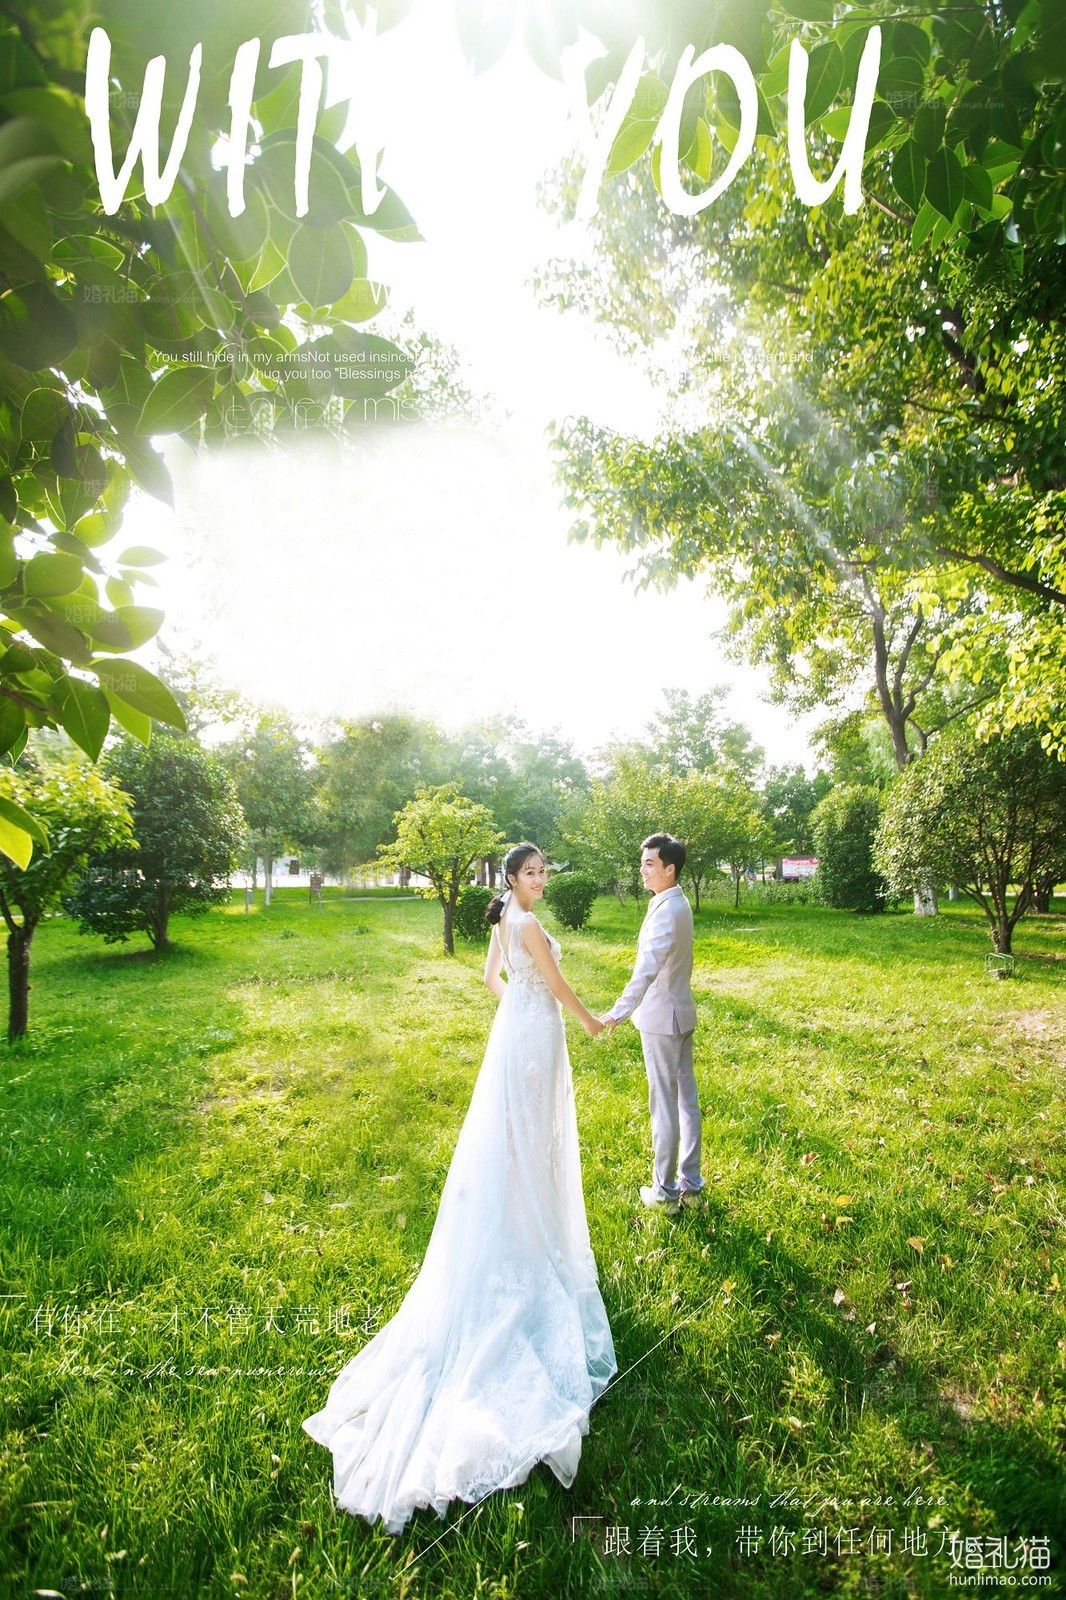 2017年10月上海婚纱照图片,,上海婚纱照,婚纱照图片